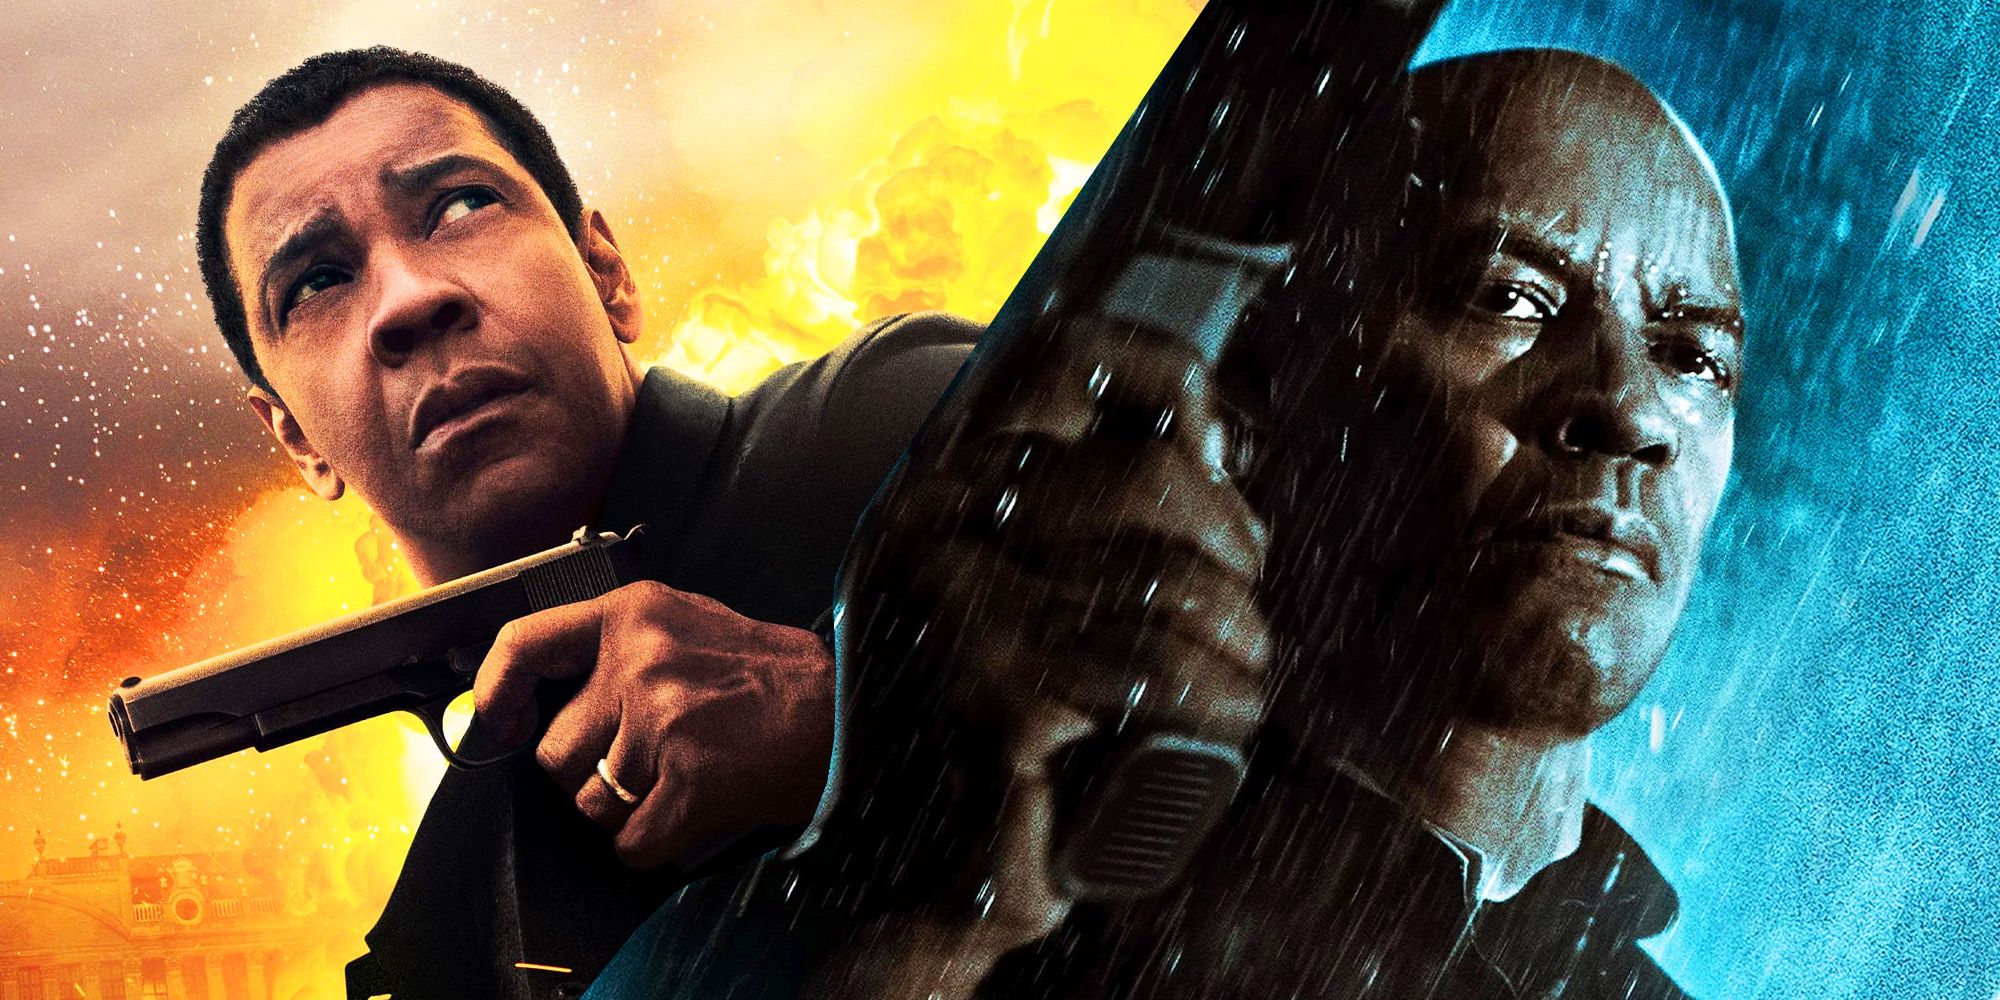 Denzel Washington in The Equalizer films